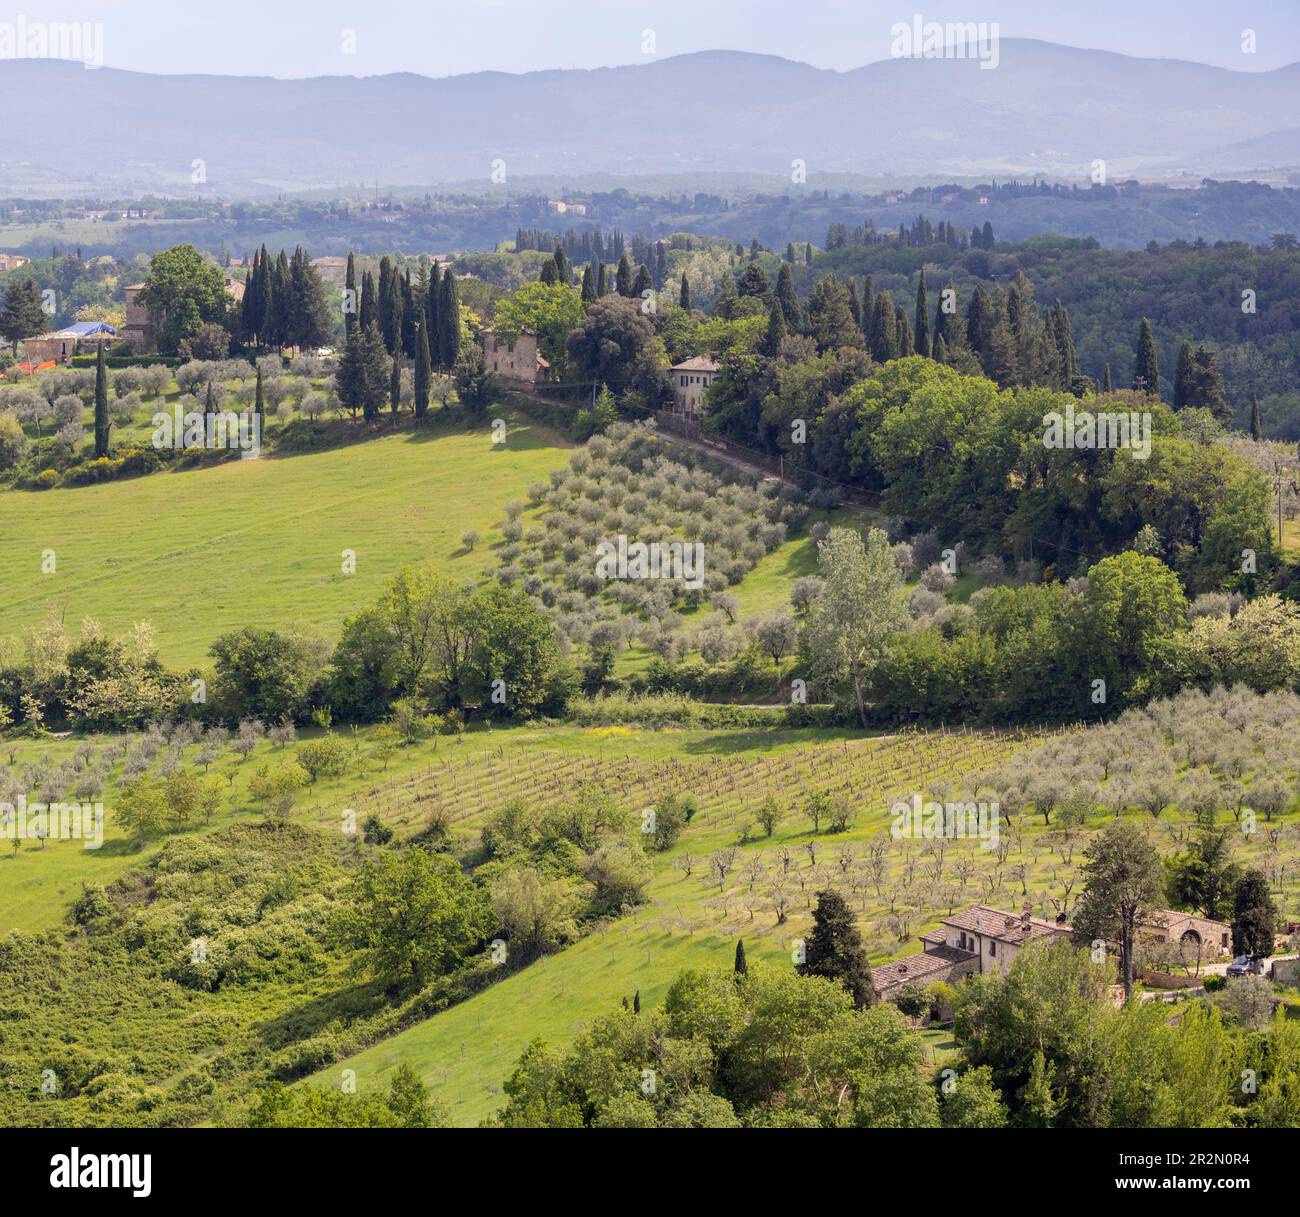 Campagna e agriturismo nei dintorni di San Gimignano, Provincia di Siena, Toscana, Italia. San Gimignano è un sito patrimonio dell'umanità dell'UNESCO. Foto Stock